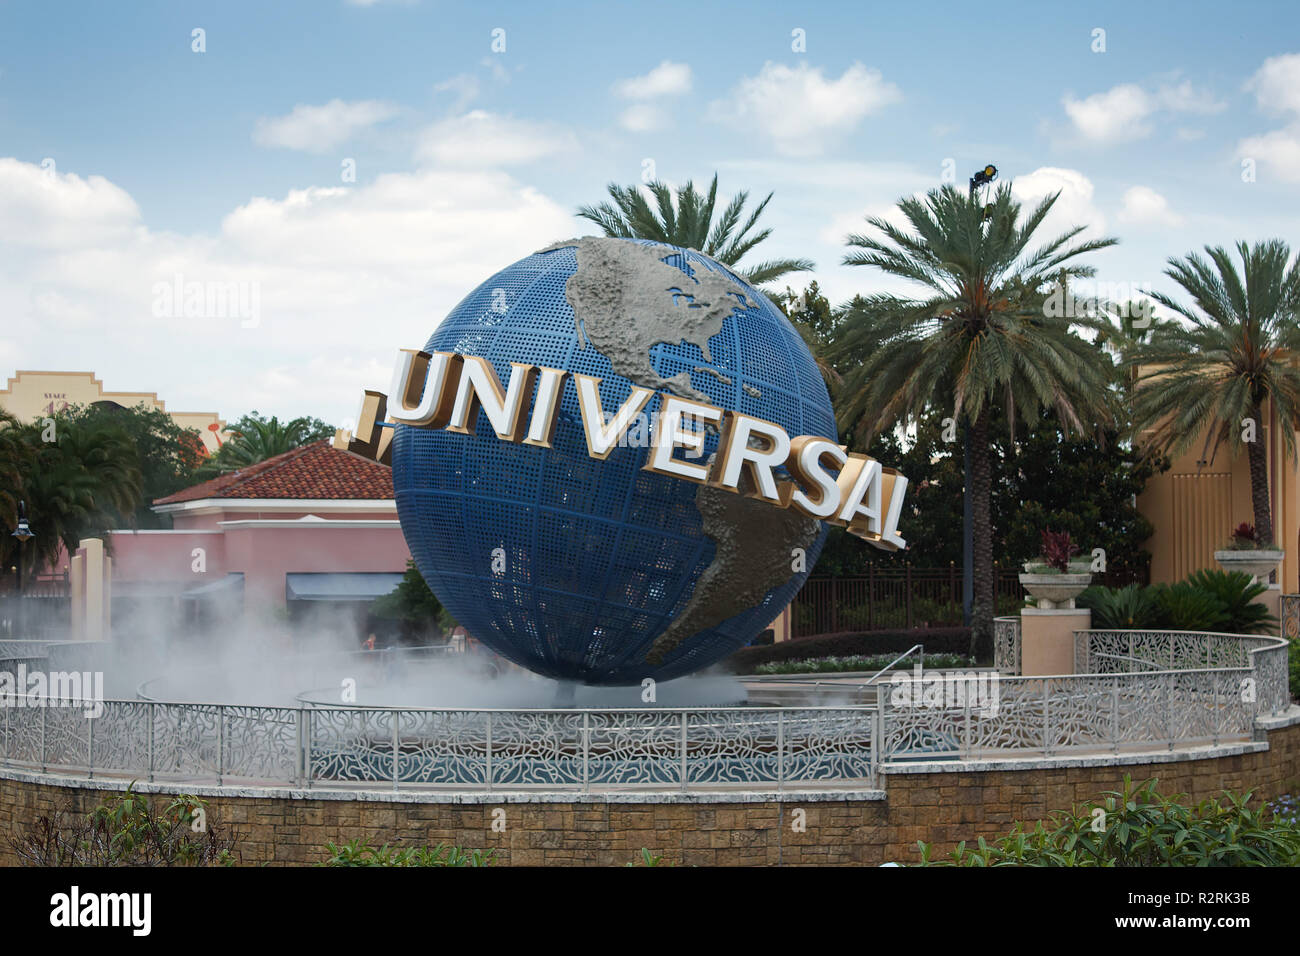 ORLANDO, Florida, USA - Juni 9, 2010: Die große rotierende Universal logo Globus auf Universal Studios ist einer der berühmten Orlando Themenparks. Stockfoto